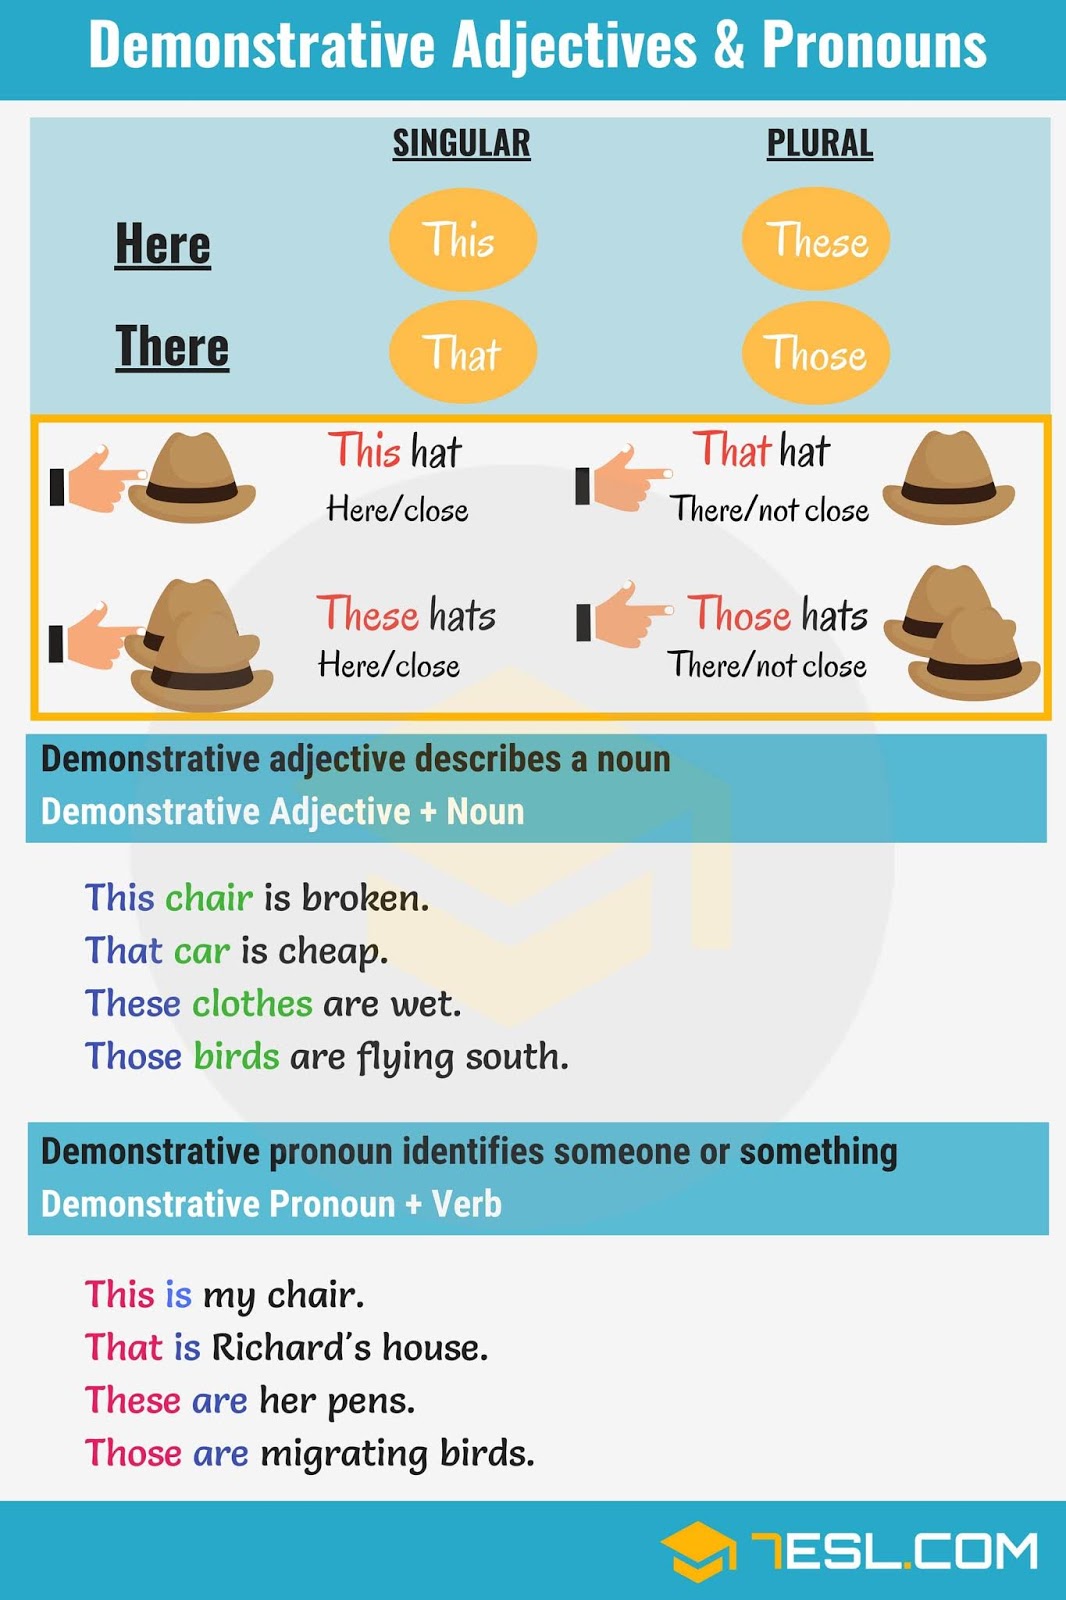 Demonstrative Adjectives Worksheet